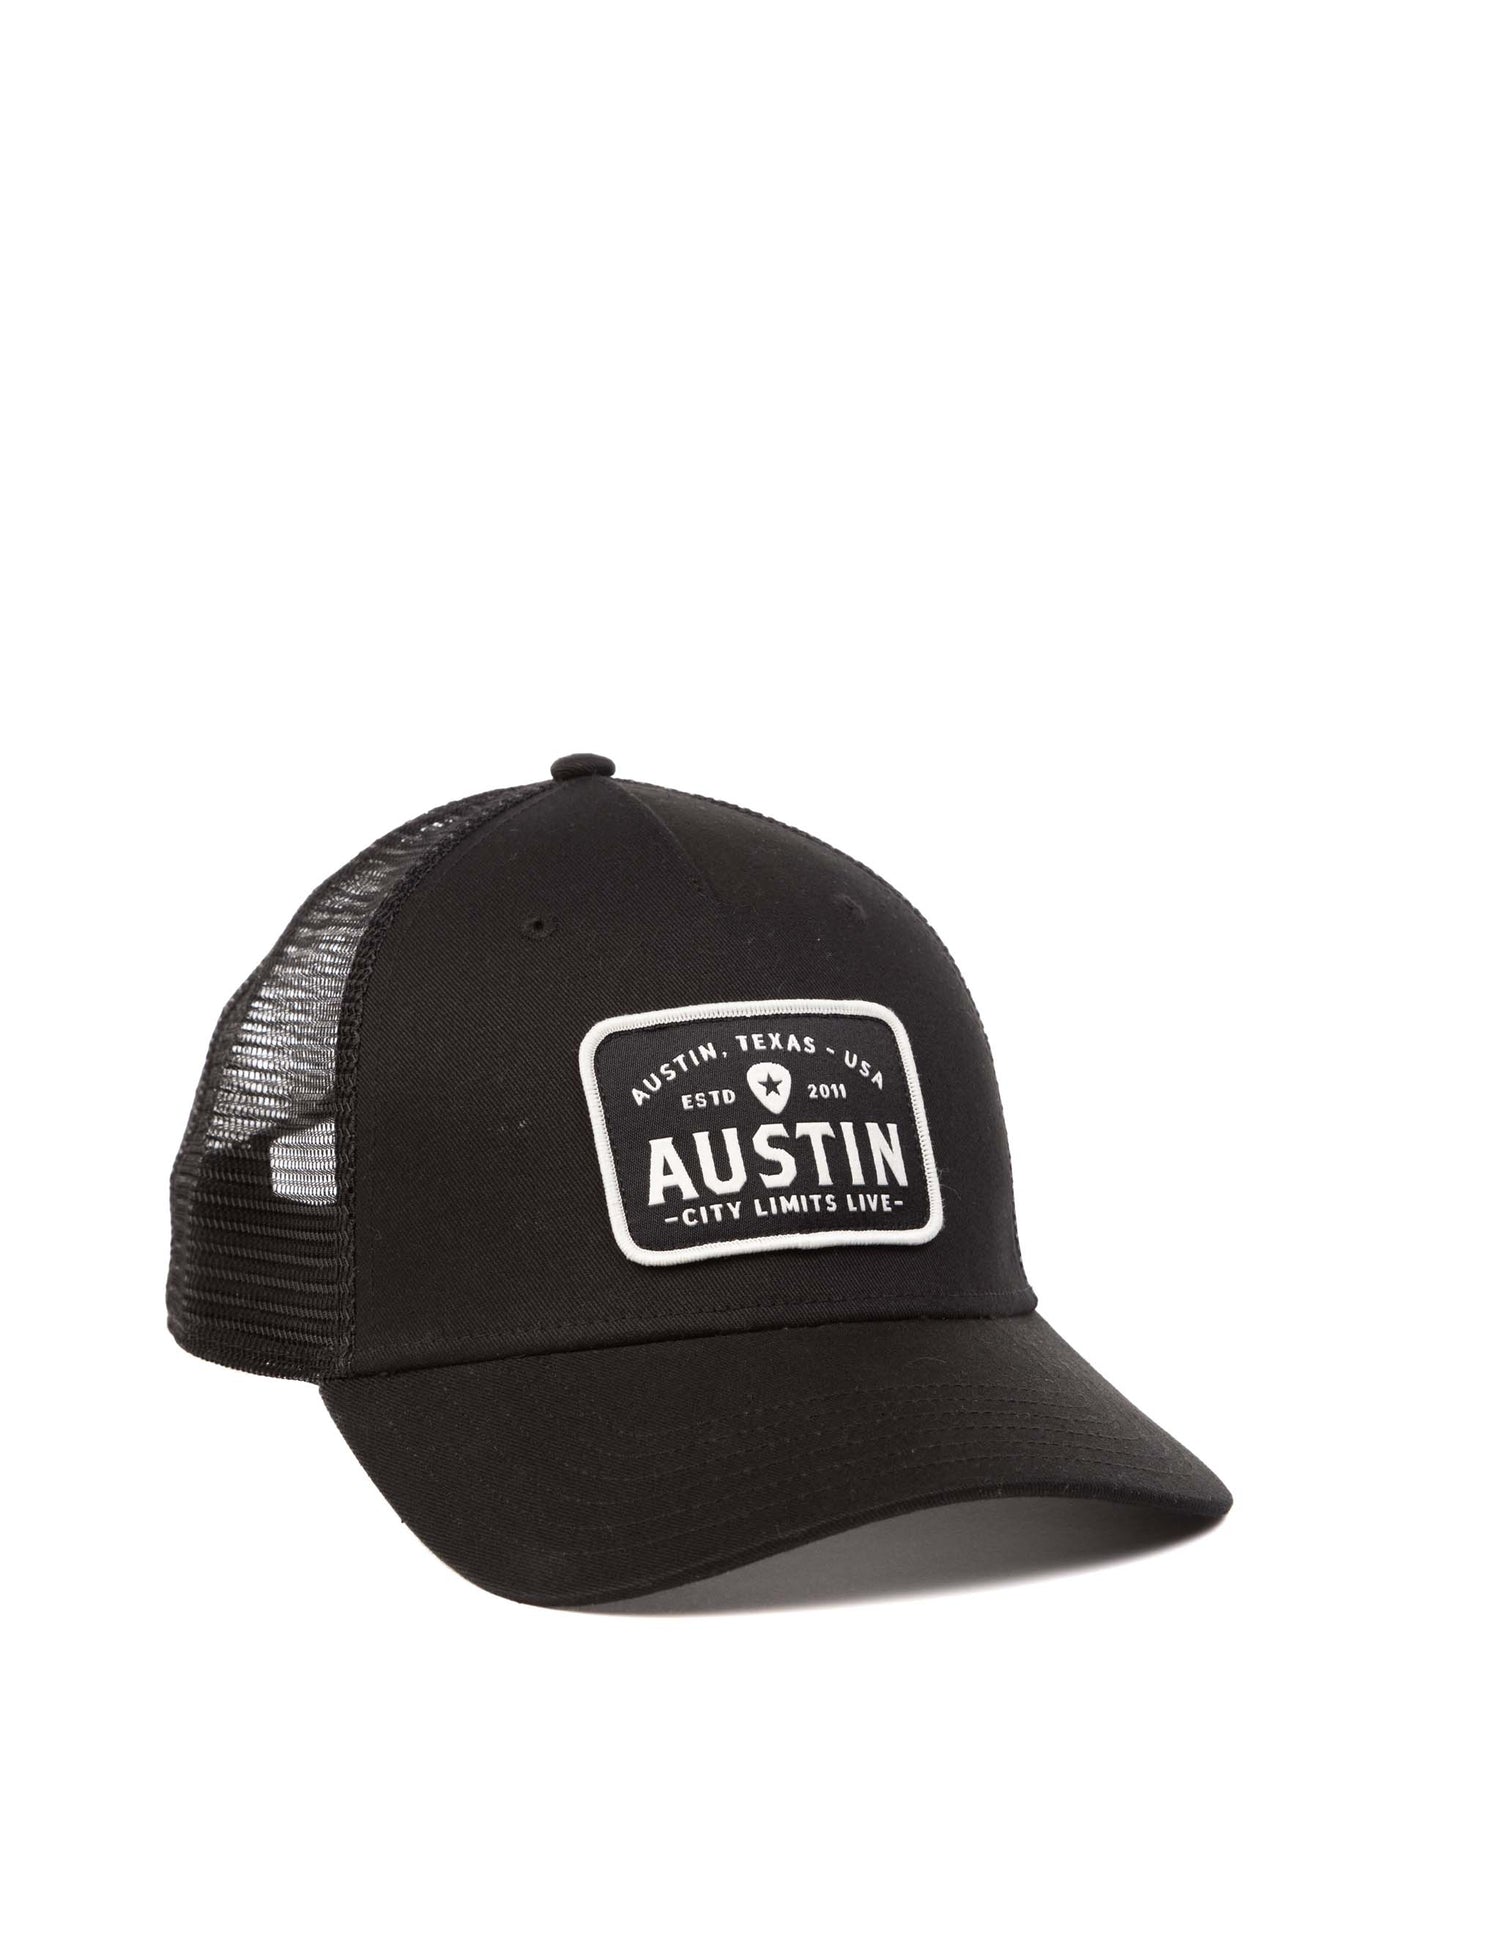 Austin City Limits Live Classic Black Patch Hat